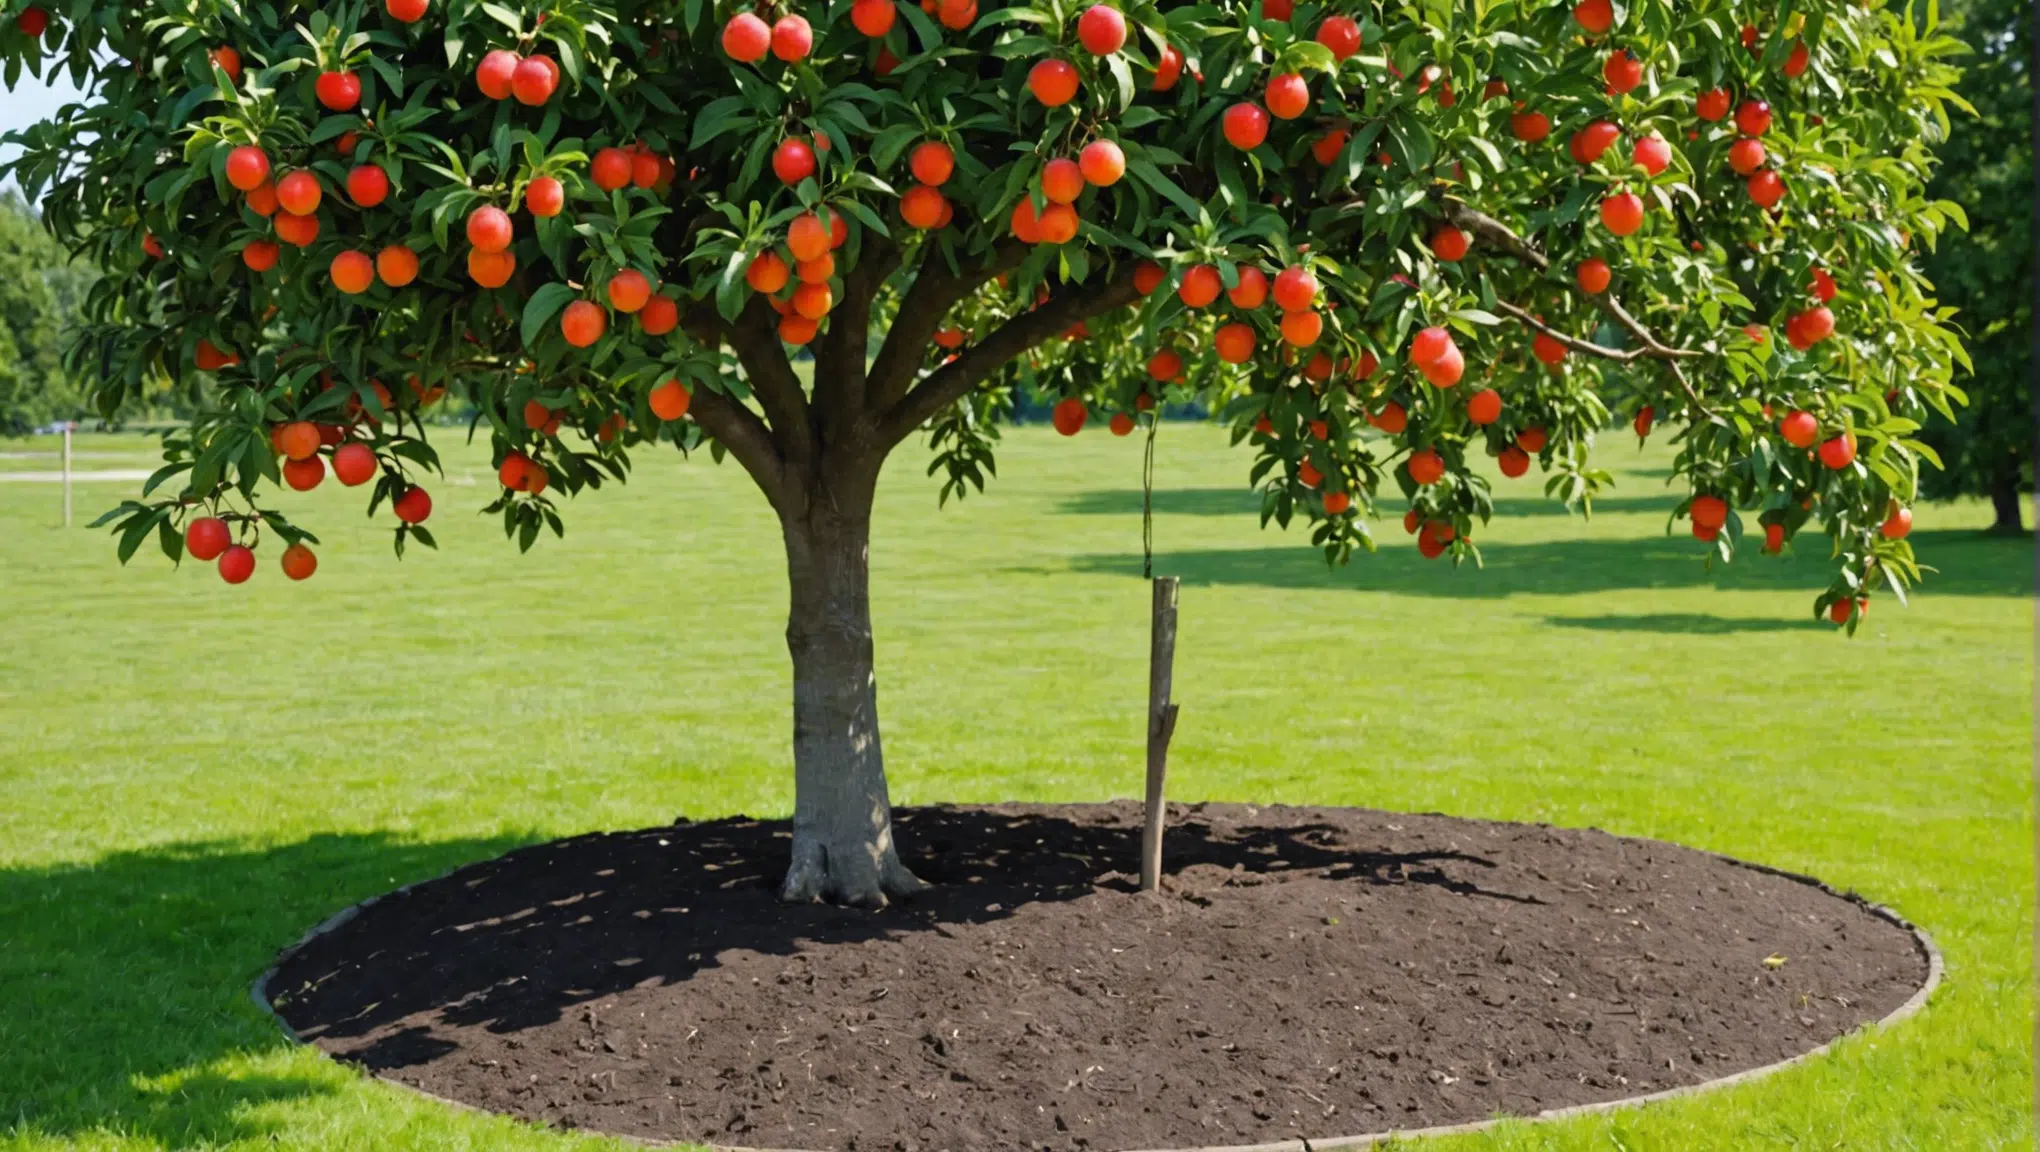 découvrez les étapes pour réussir la plantation d'arbres fruitiers et profiter d'une récolte abondante grâce à nos conseils pratiques et astuces de jardinage.